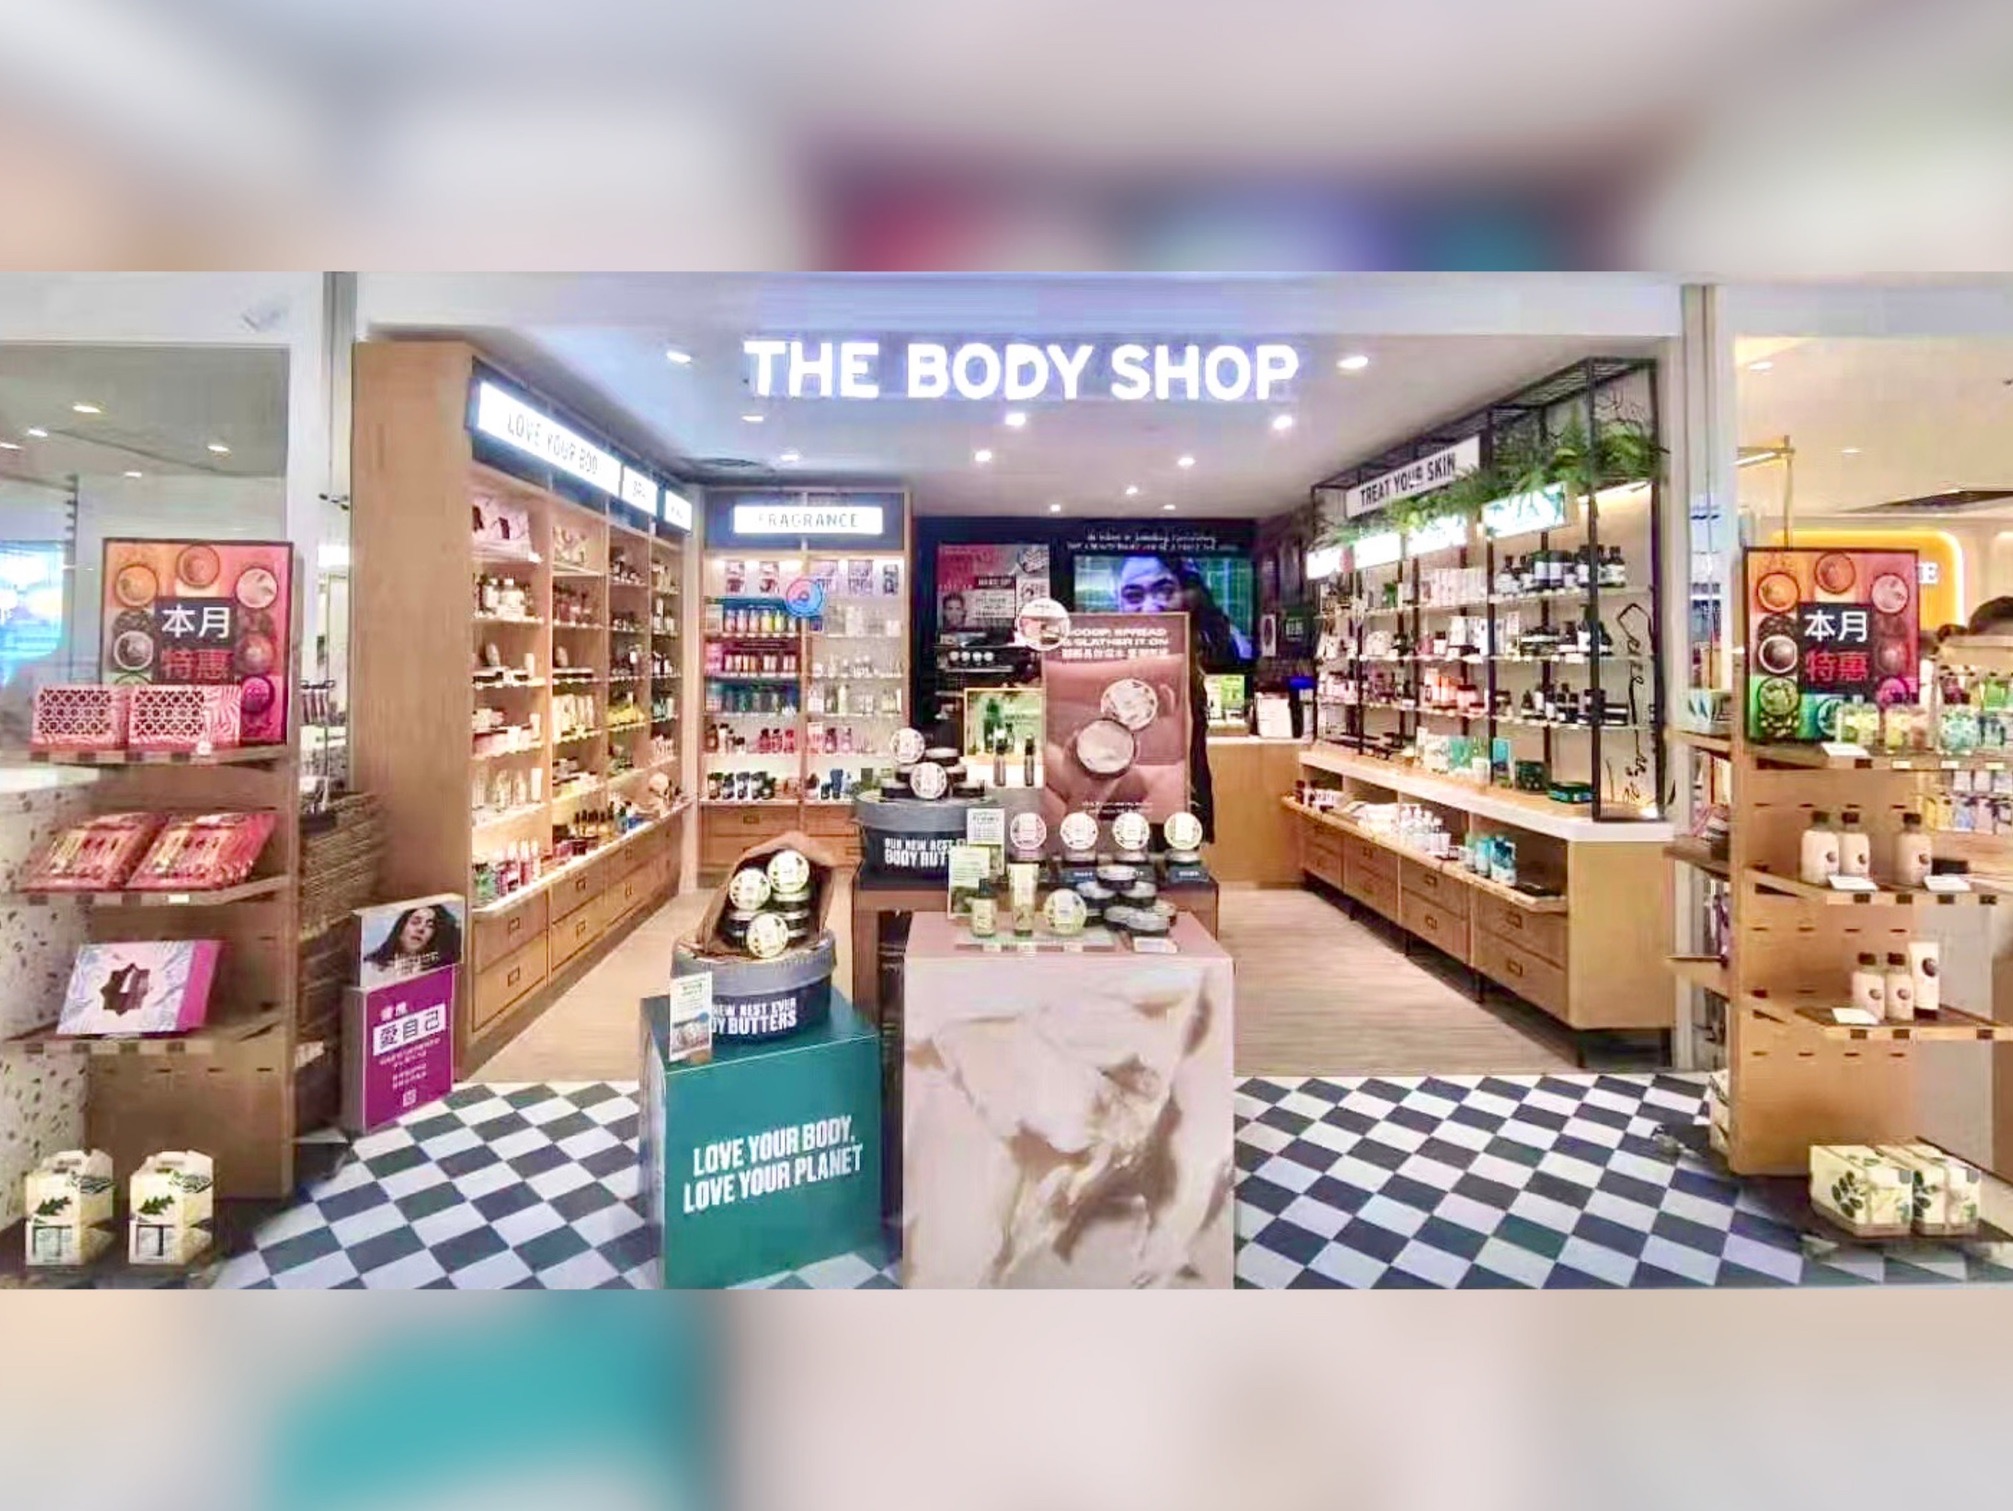 【有影】幸福企業數據強化員工職能  The Body Shop美體小舖服務品質更上一層樓